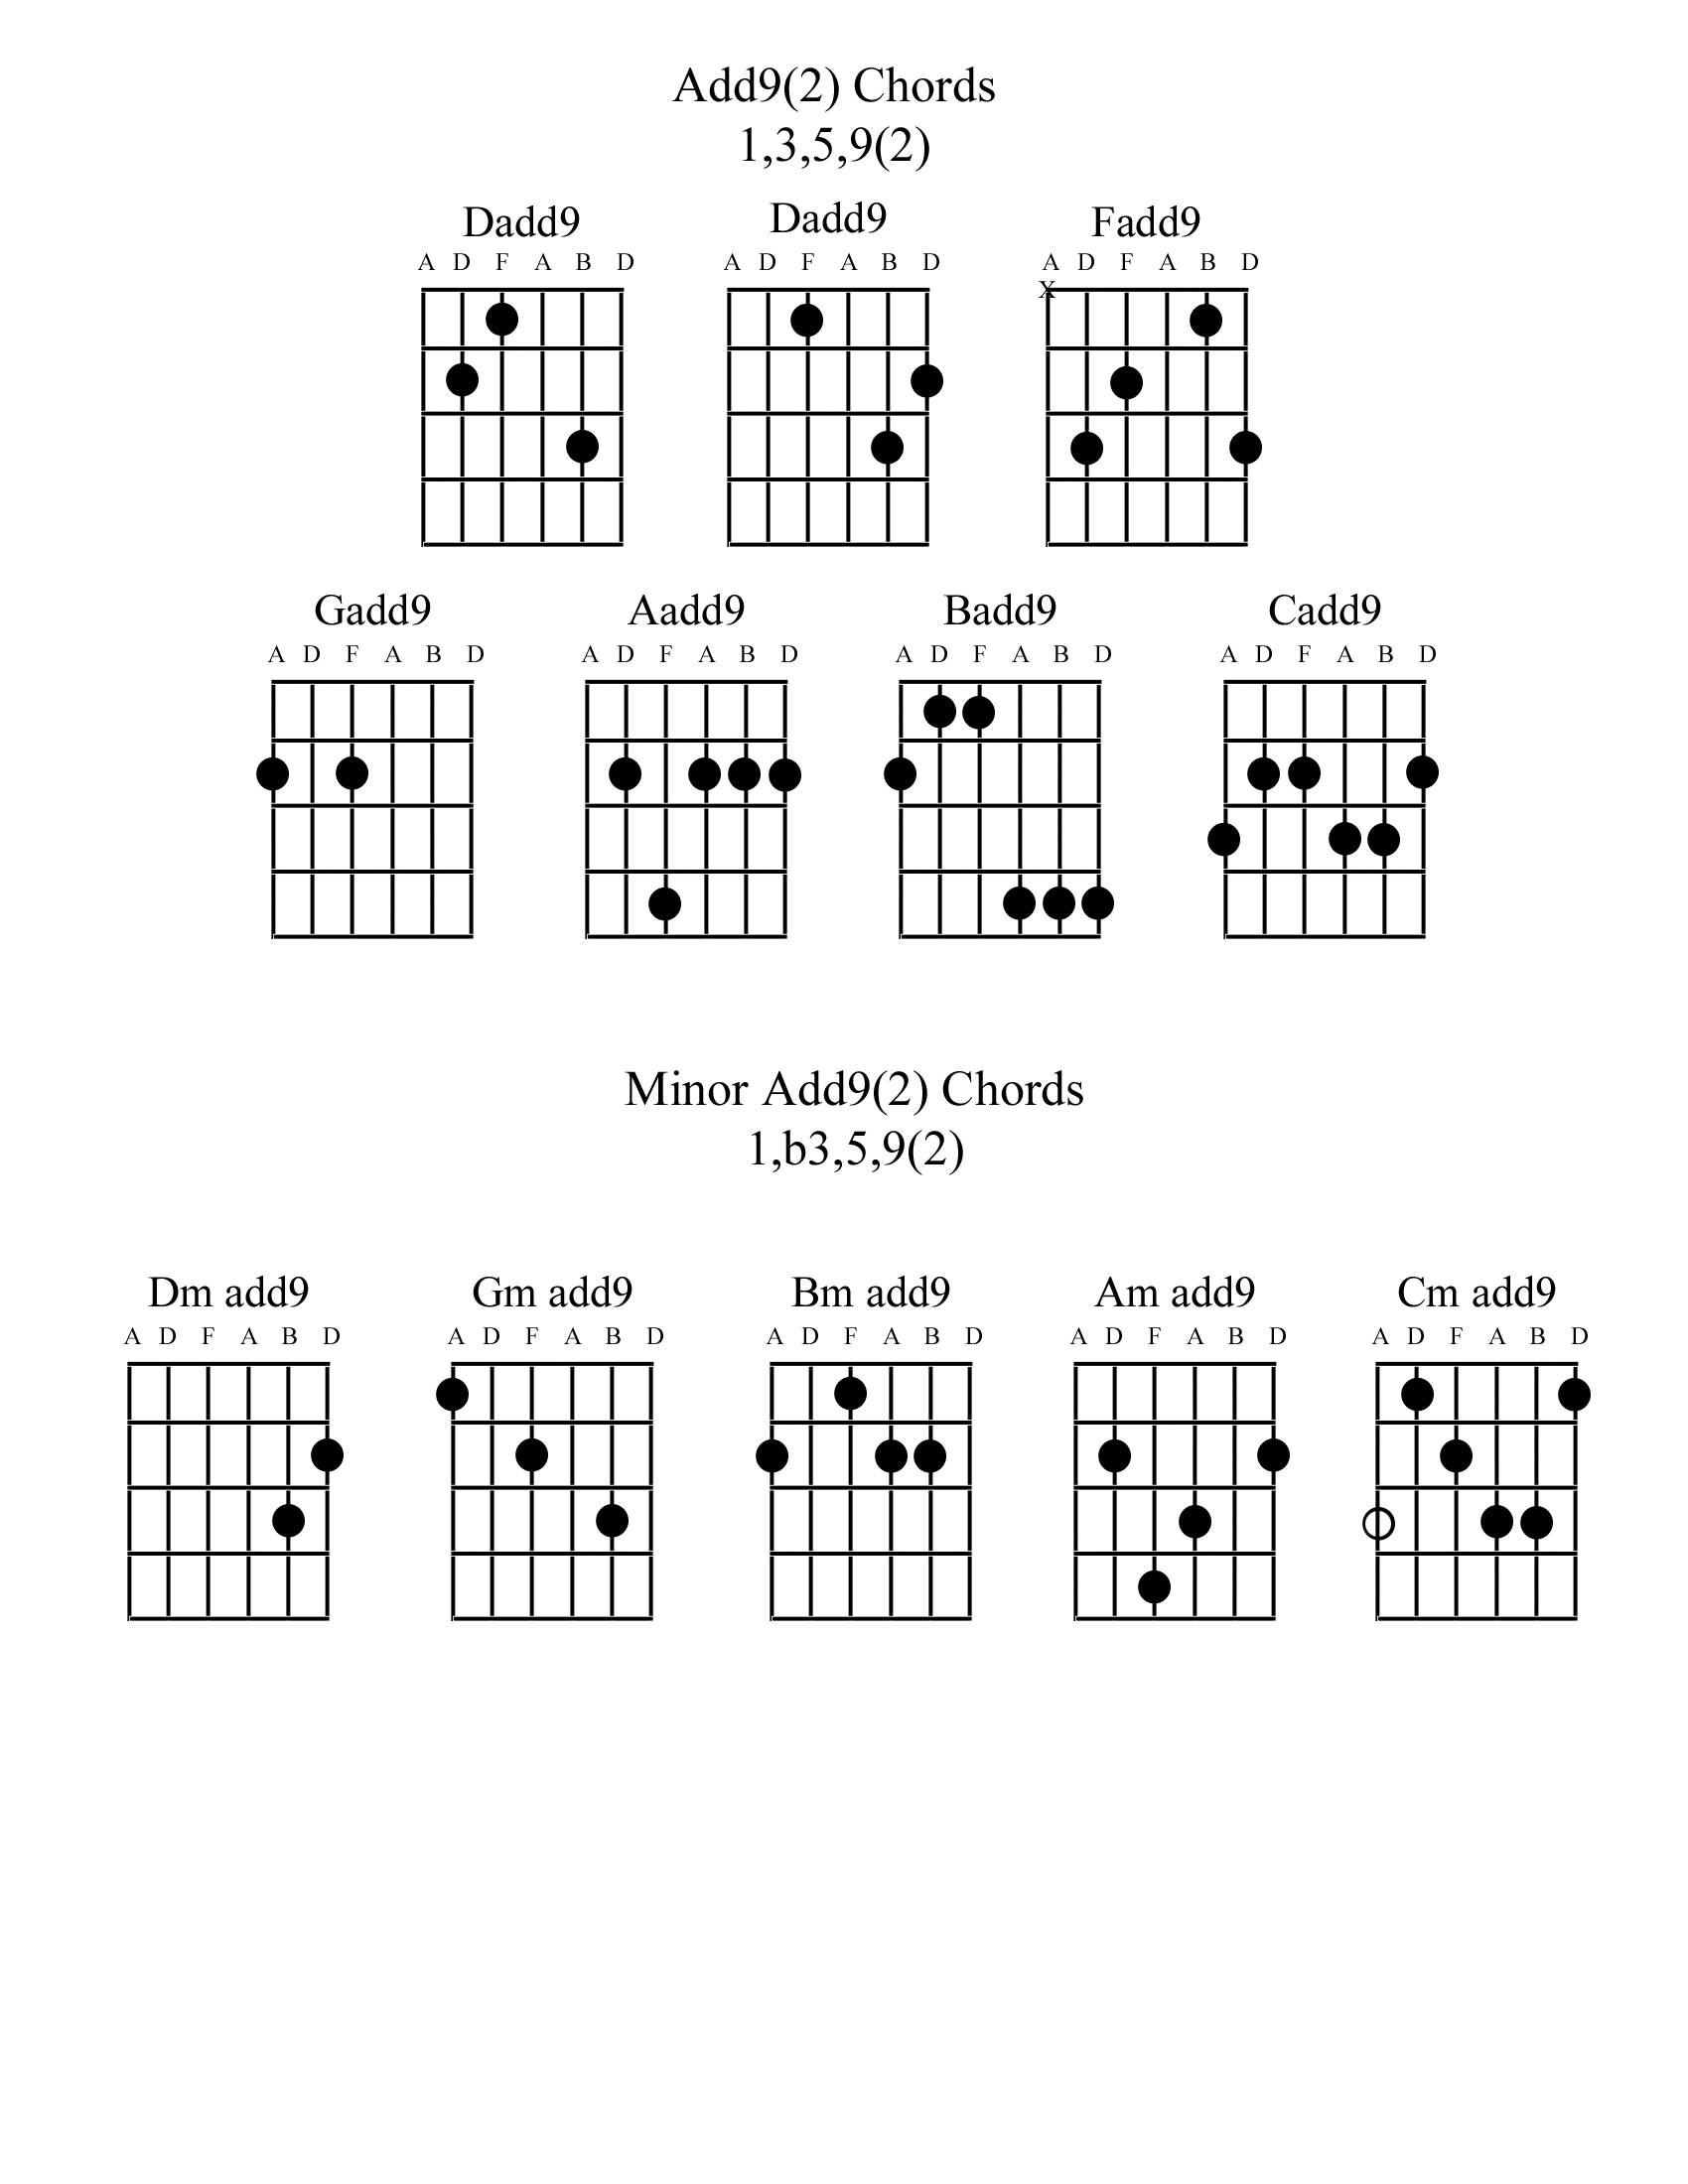 Add 9 - Minor Add 9 Chords